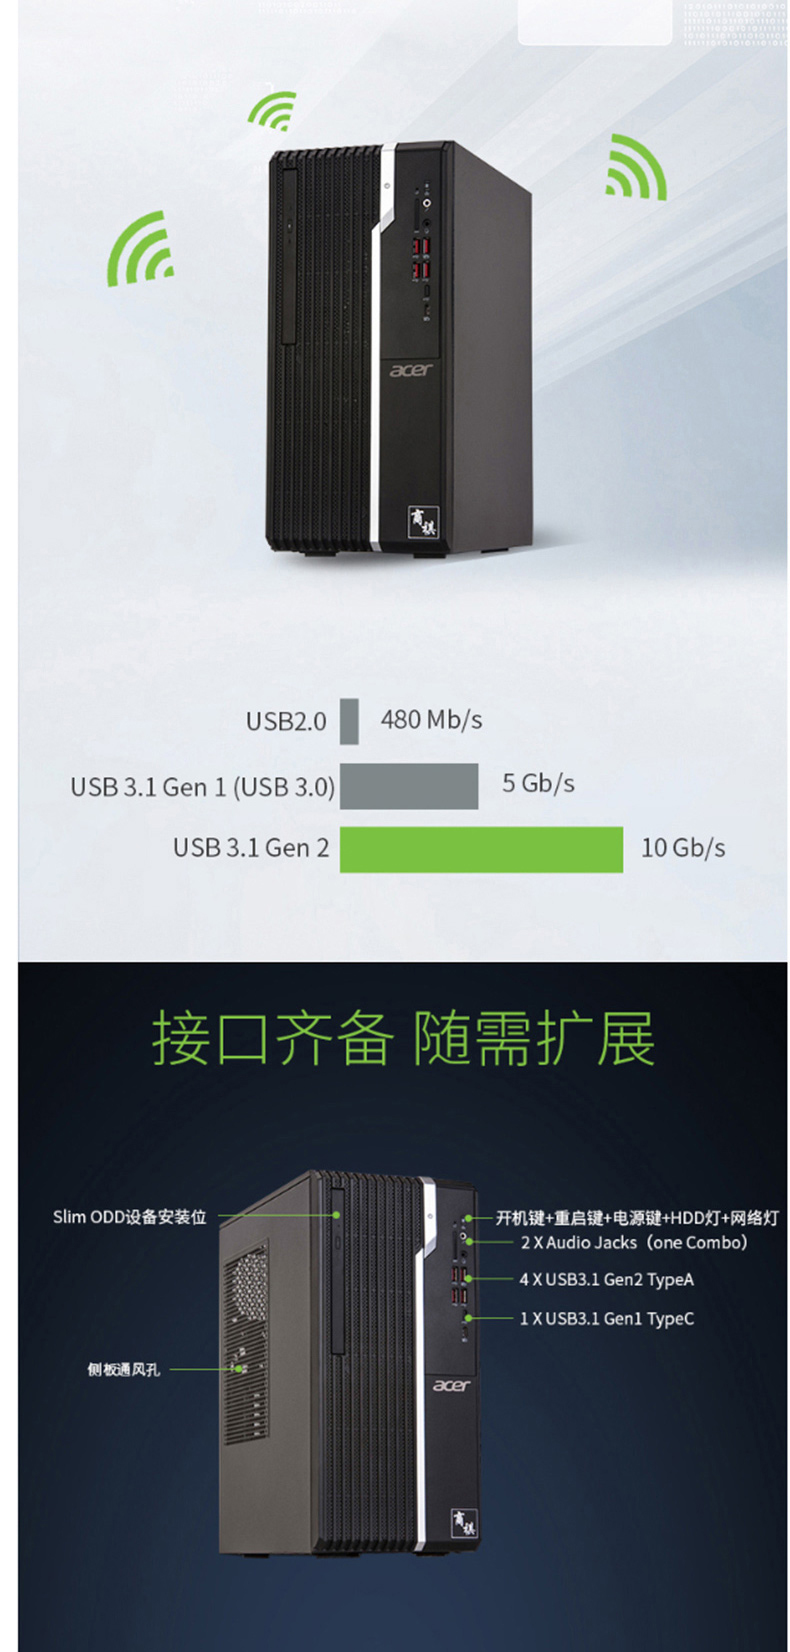 宏碁 acer 台式电脑 V4270 (黑色) I5-8400/4G/1T/21.5 IPS液晶显示器/三年保修/三年上门服务